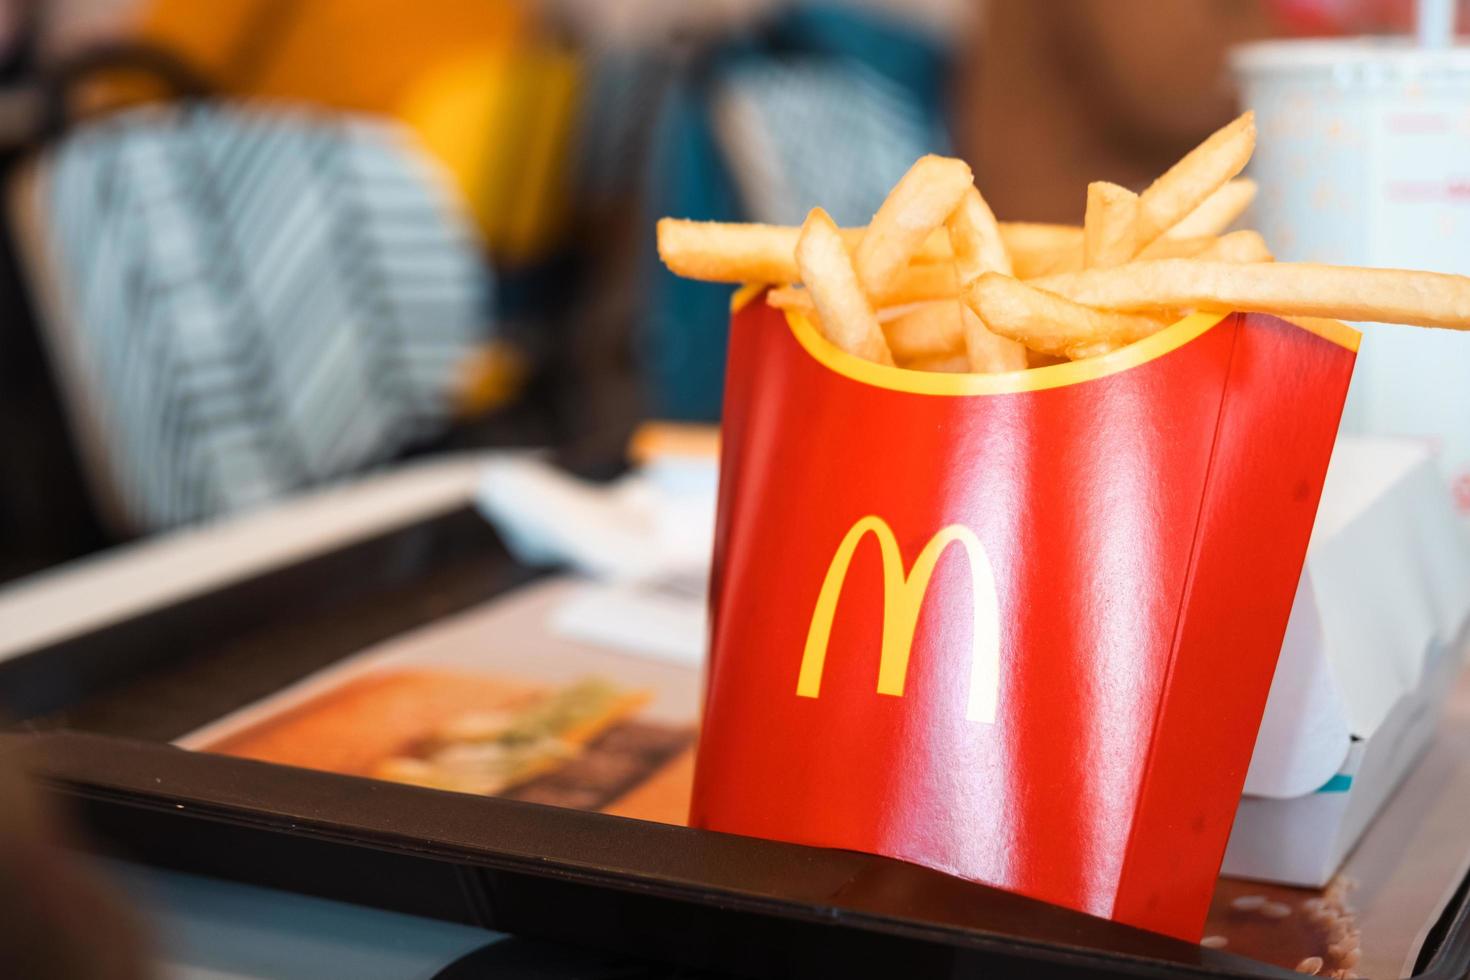 batatas fritas com uma caixa vermelha com o logotipo do mcdonald em uma bandeja e uma bebida. cadeias de restaurantes de fast food. Rússia, Kaluga, 21 de março de 2022. foto